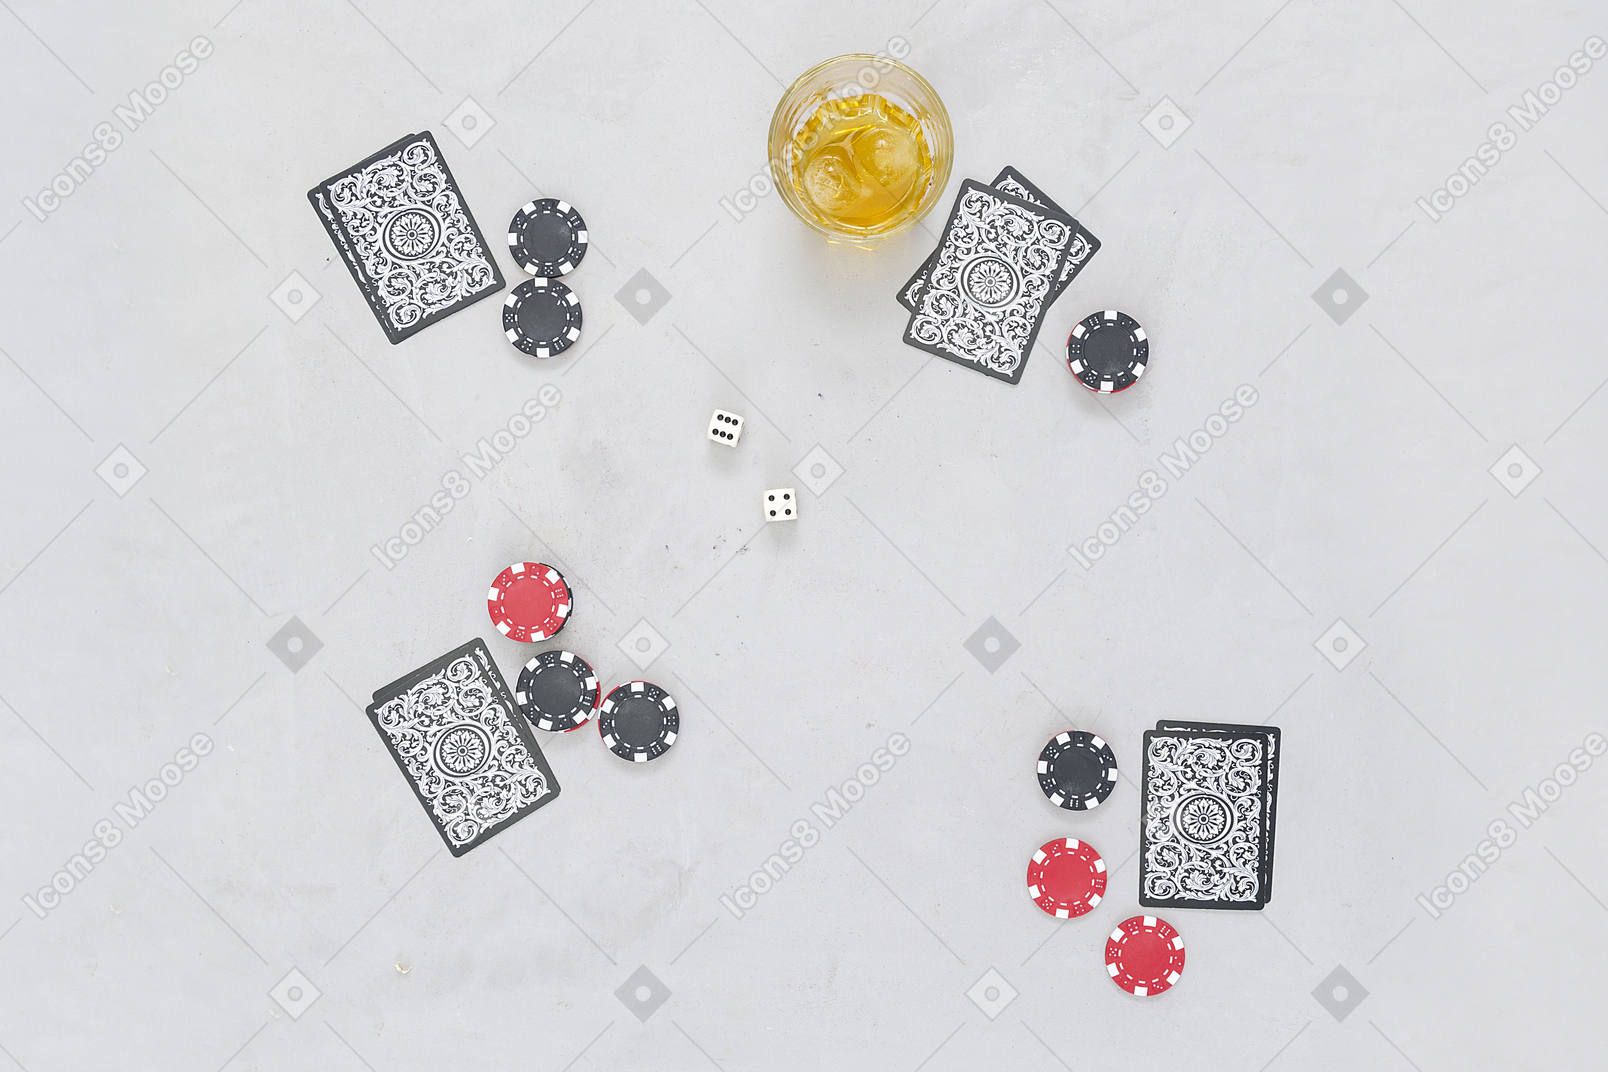 ボードカードゲームはアルコール飲料とよく来る